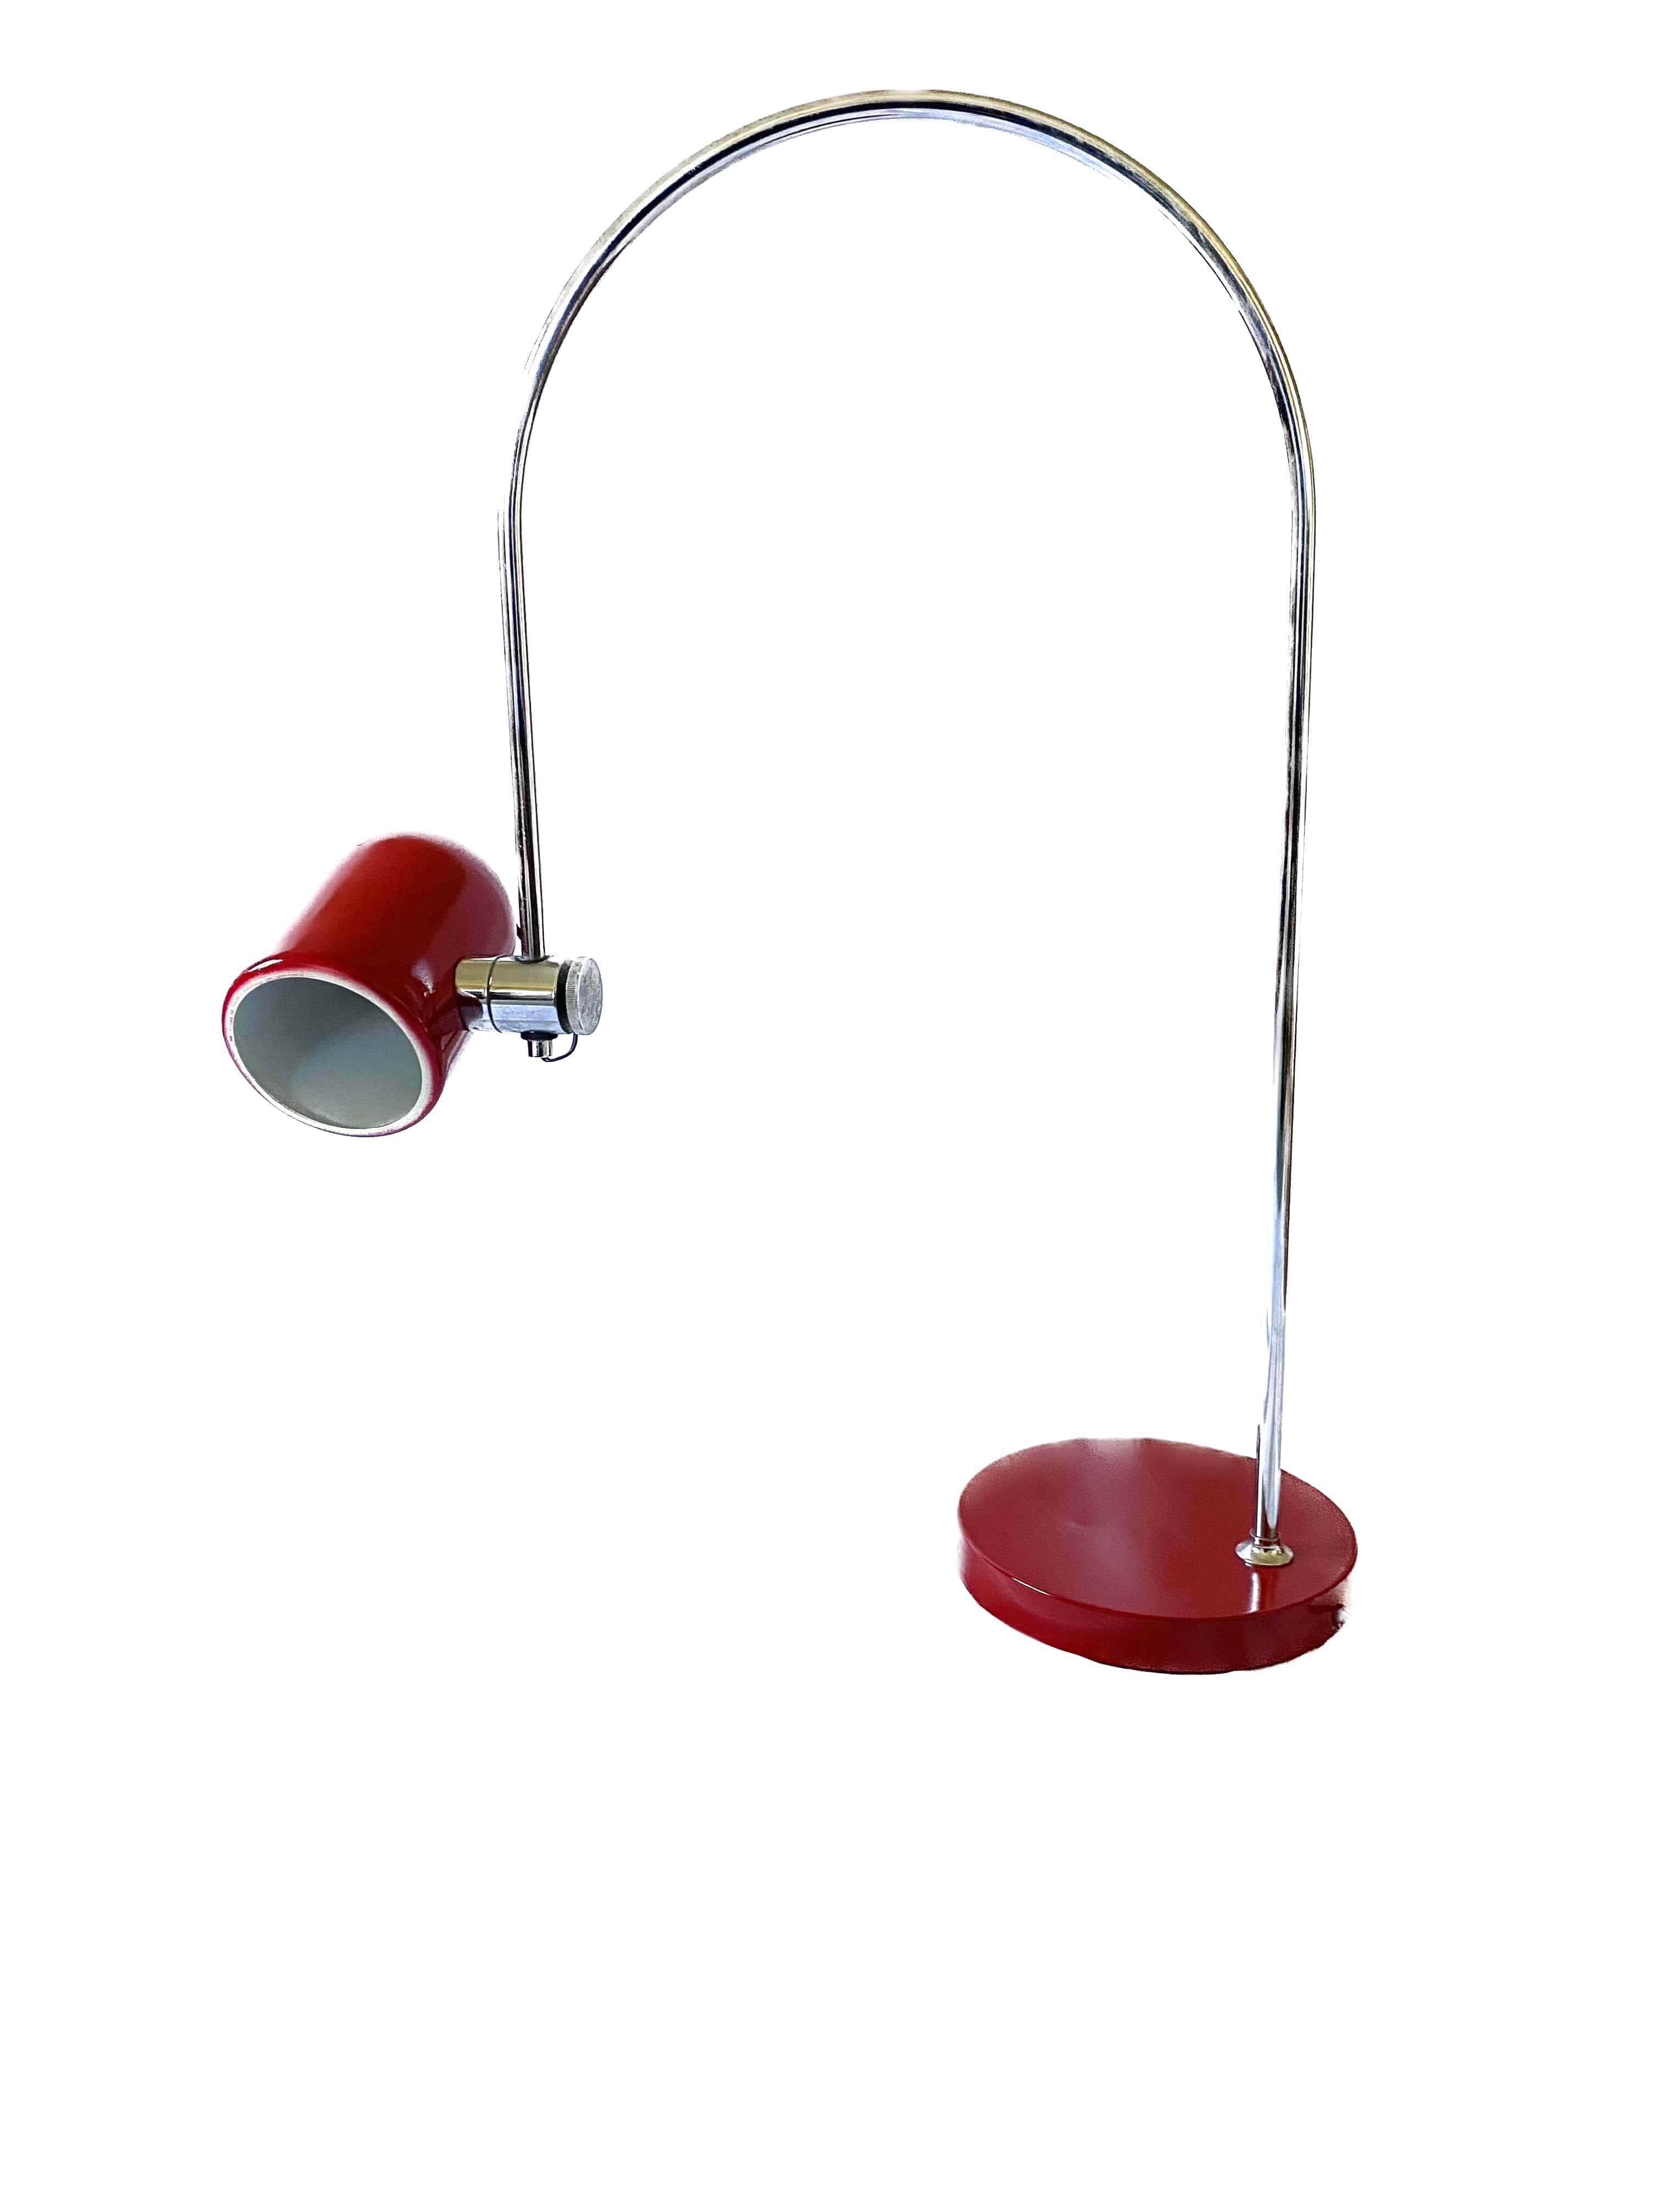 Goffredo Reggiani, Arch Table Lamp, Reggiani Italy, 1970s For Sale 1